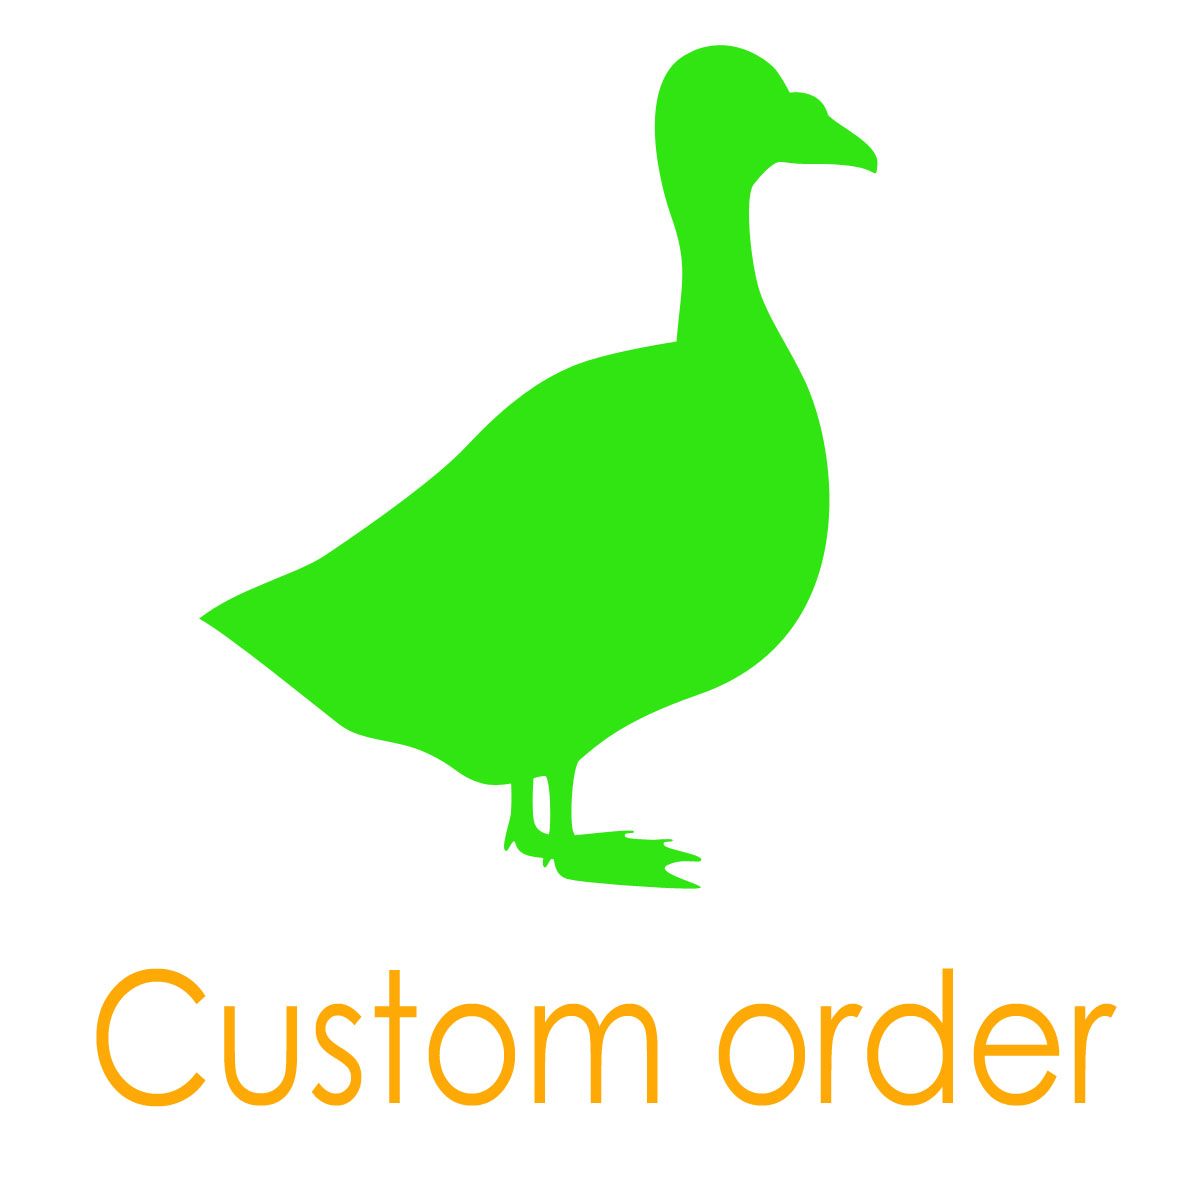 Custom order for Christina